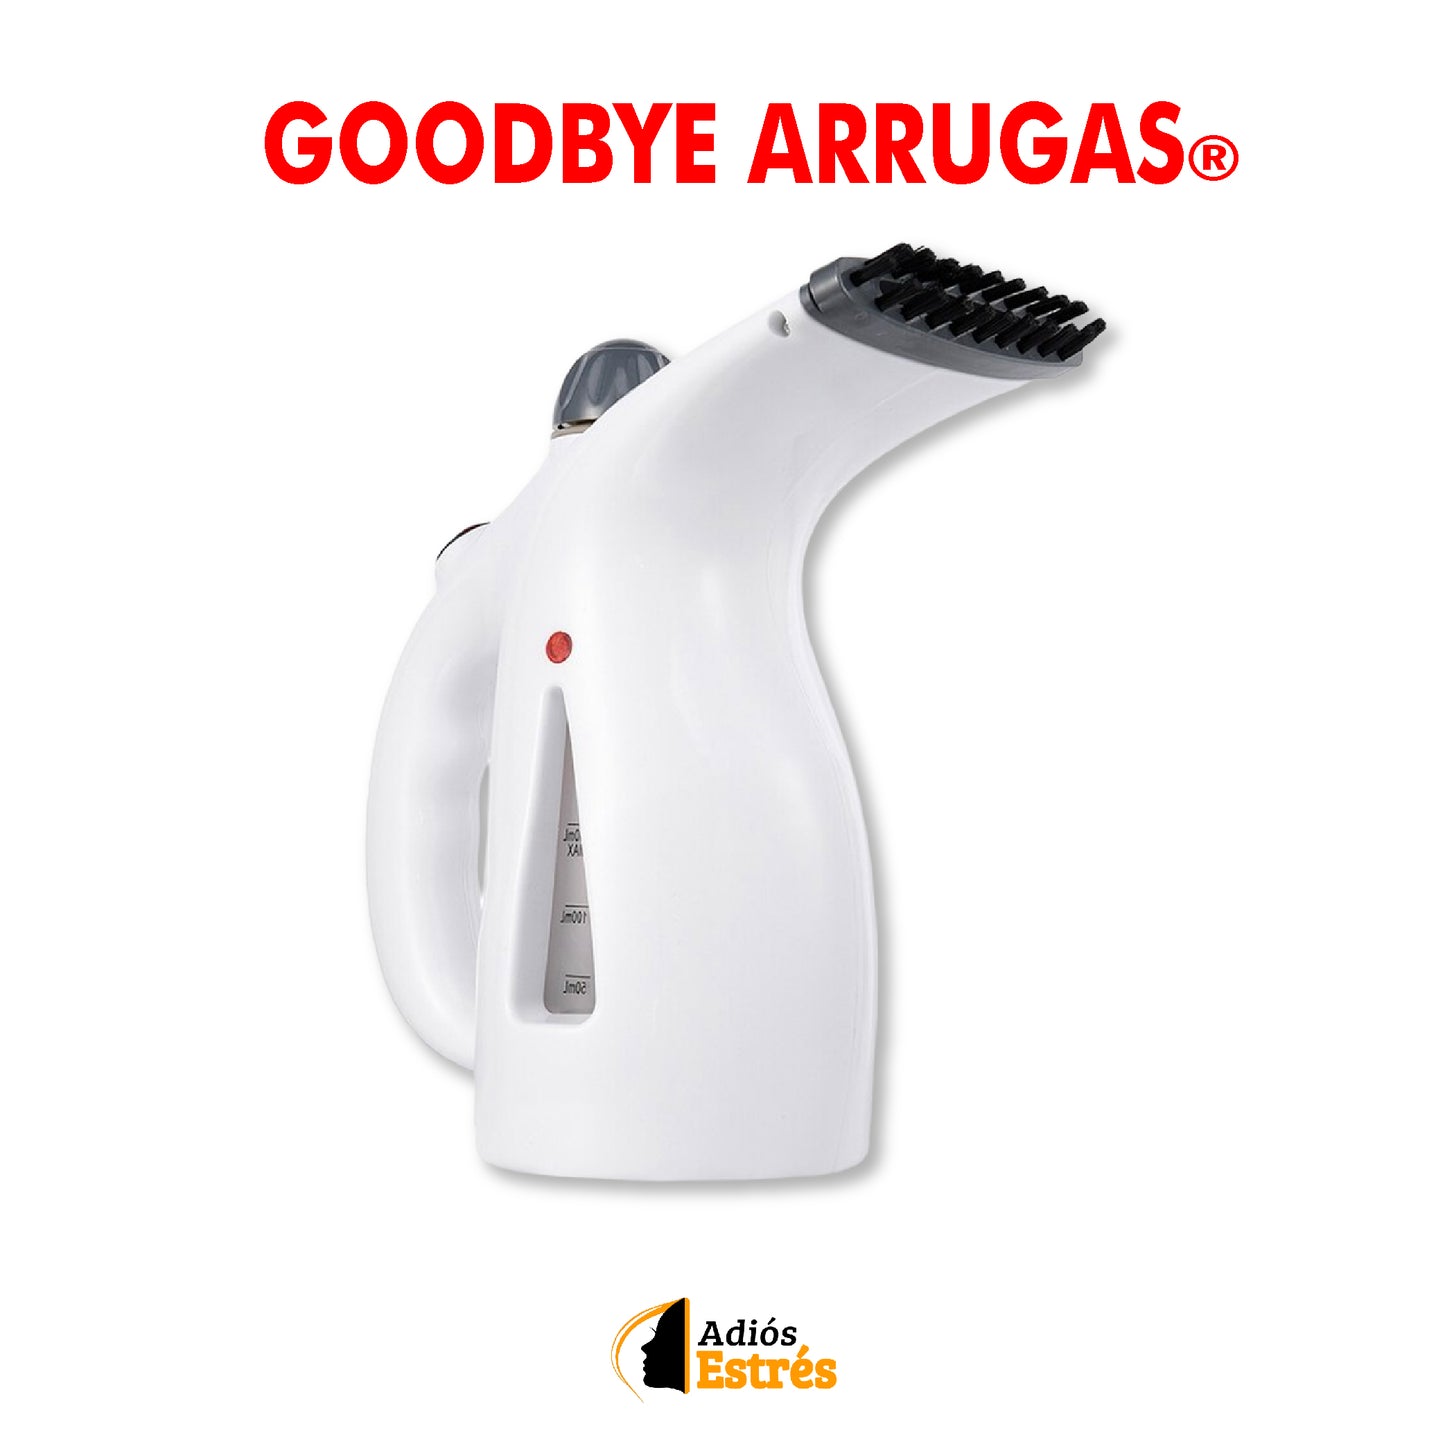 Goodbye Arrugas®